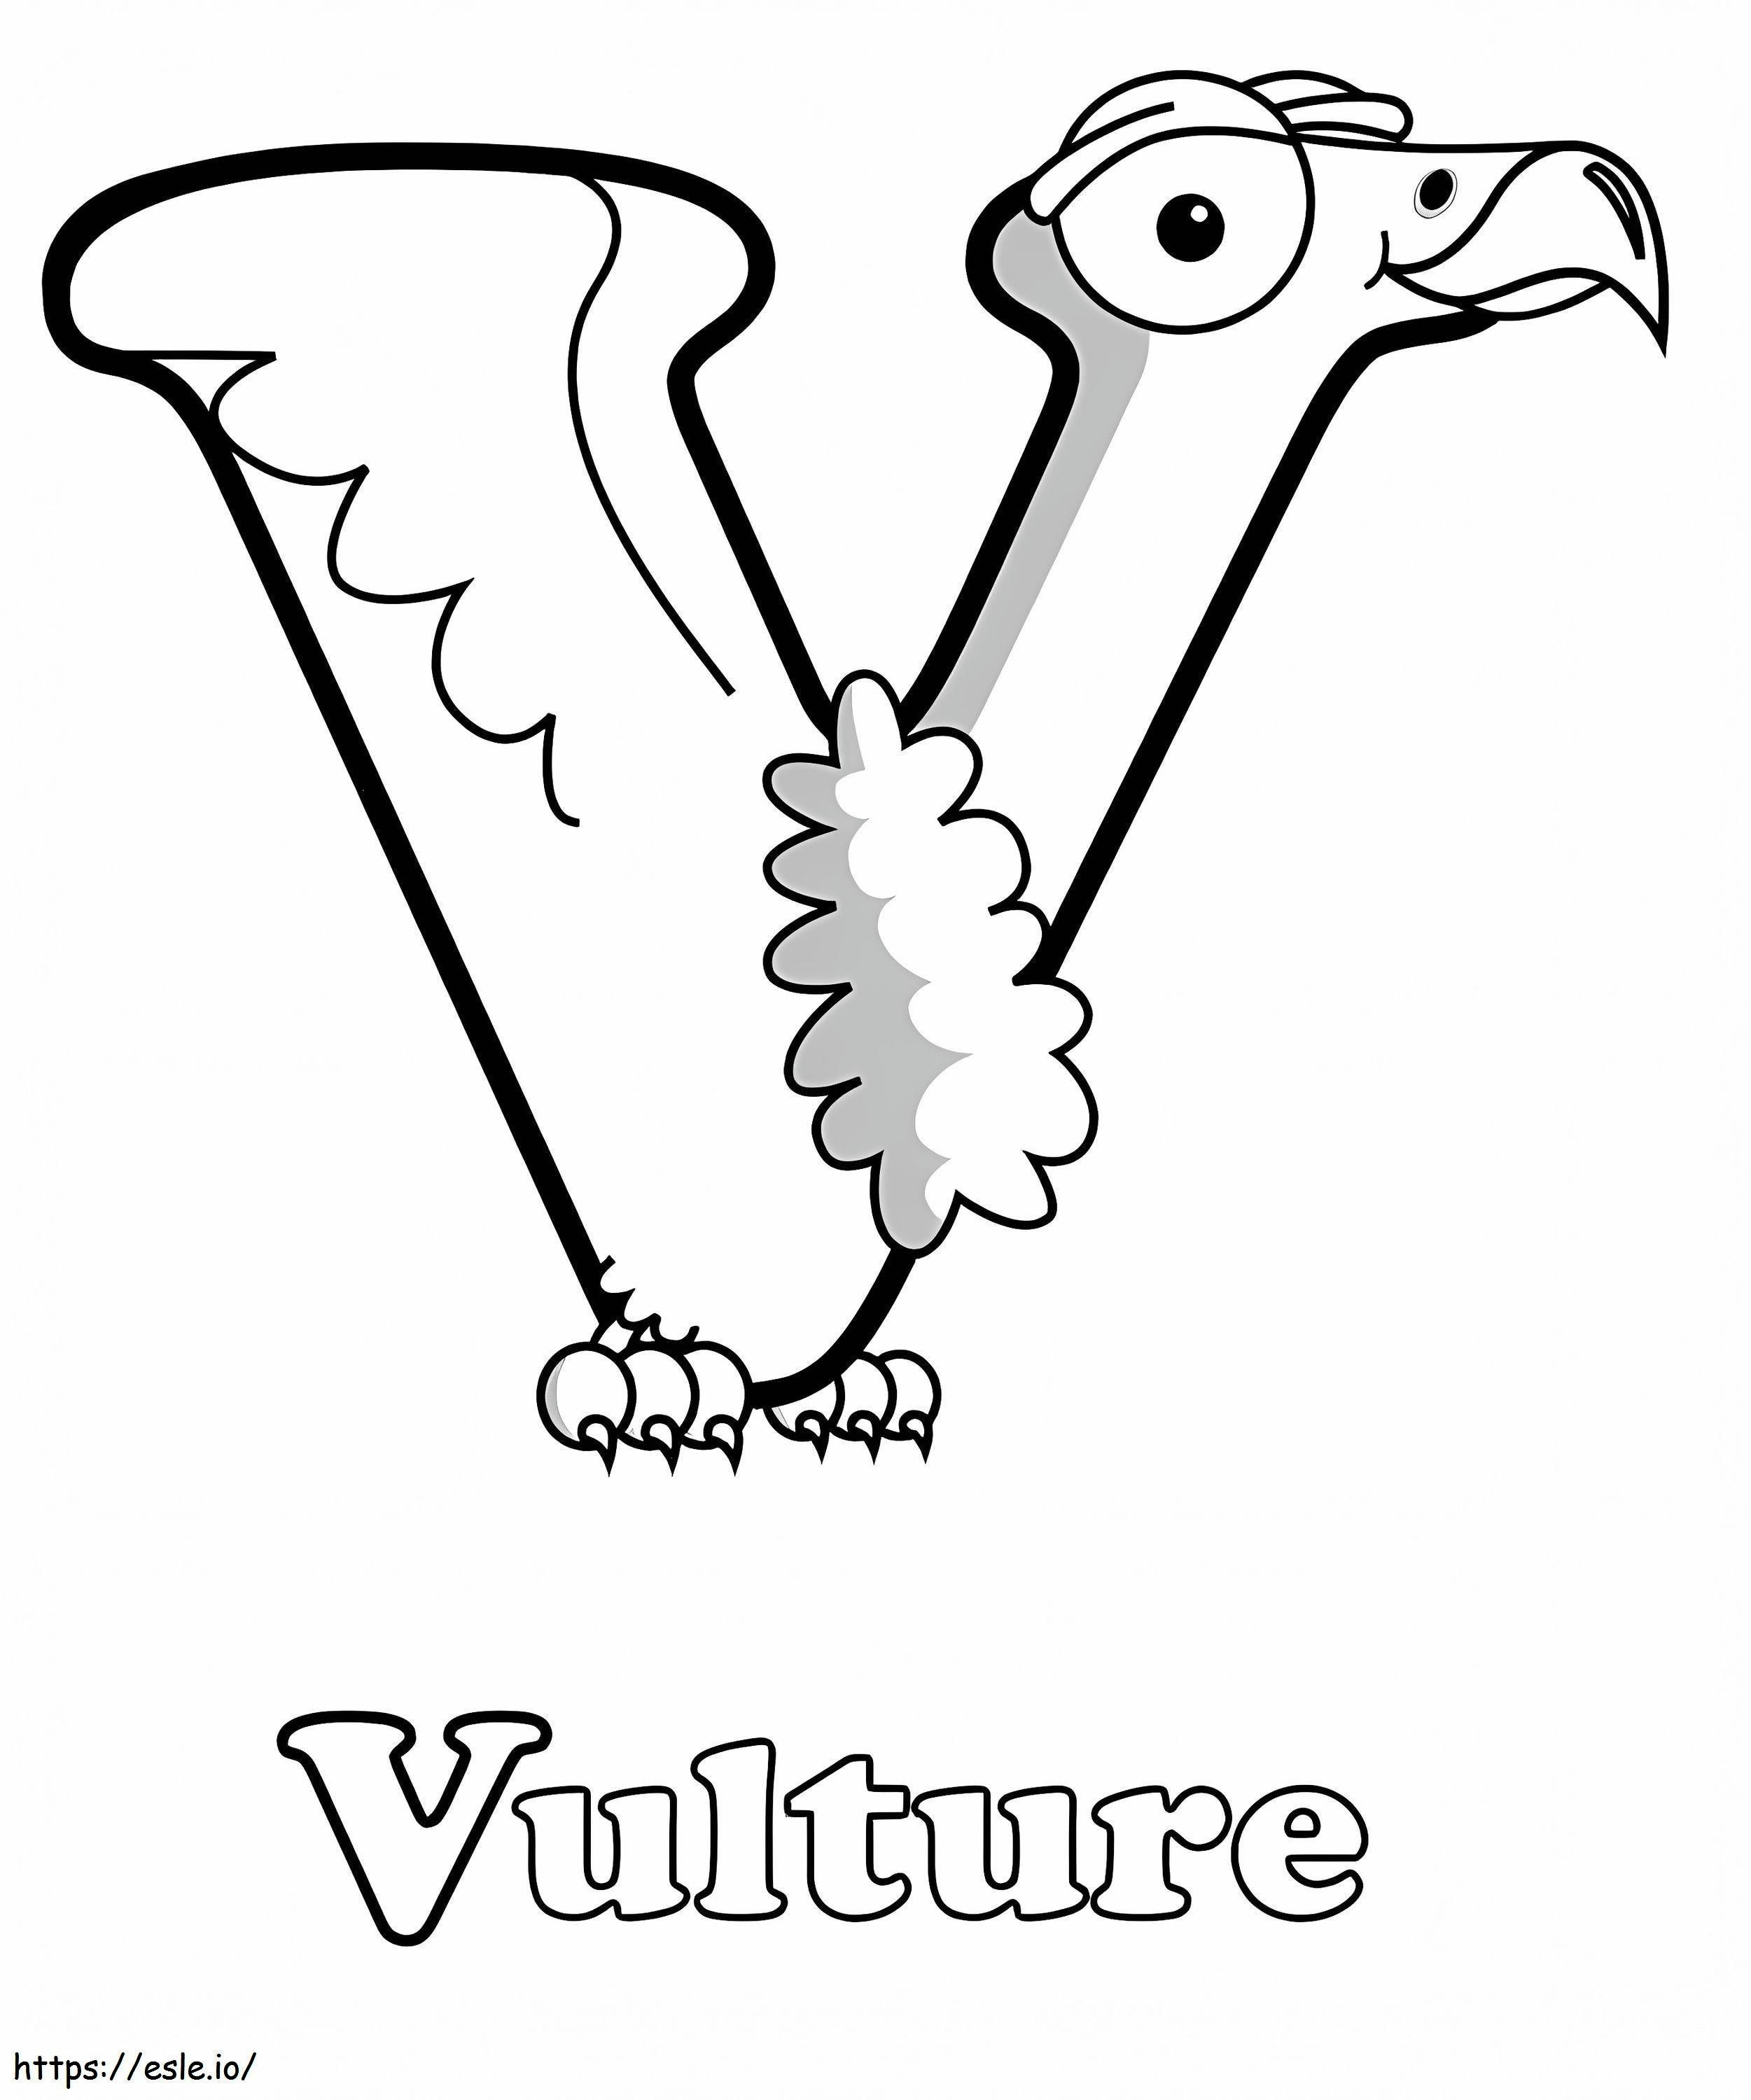 Vulture Letter V coloring page